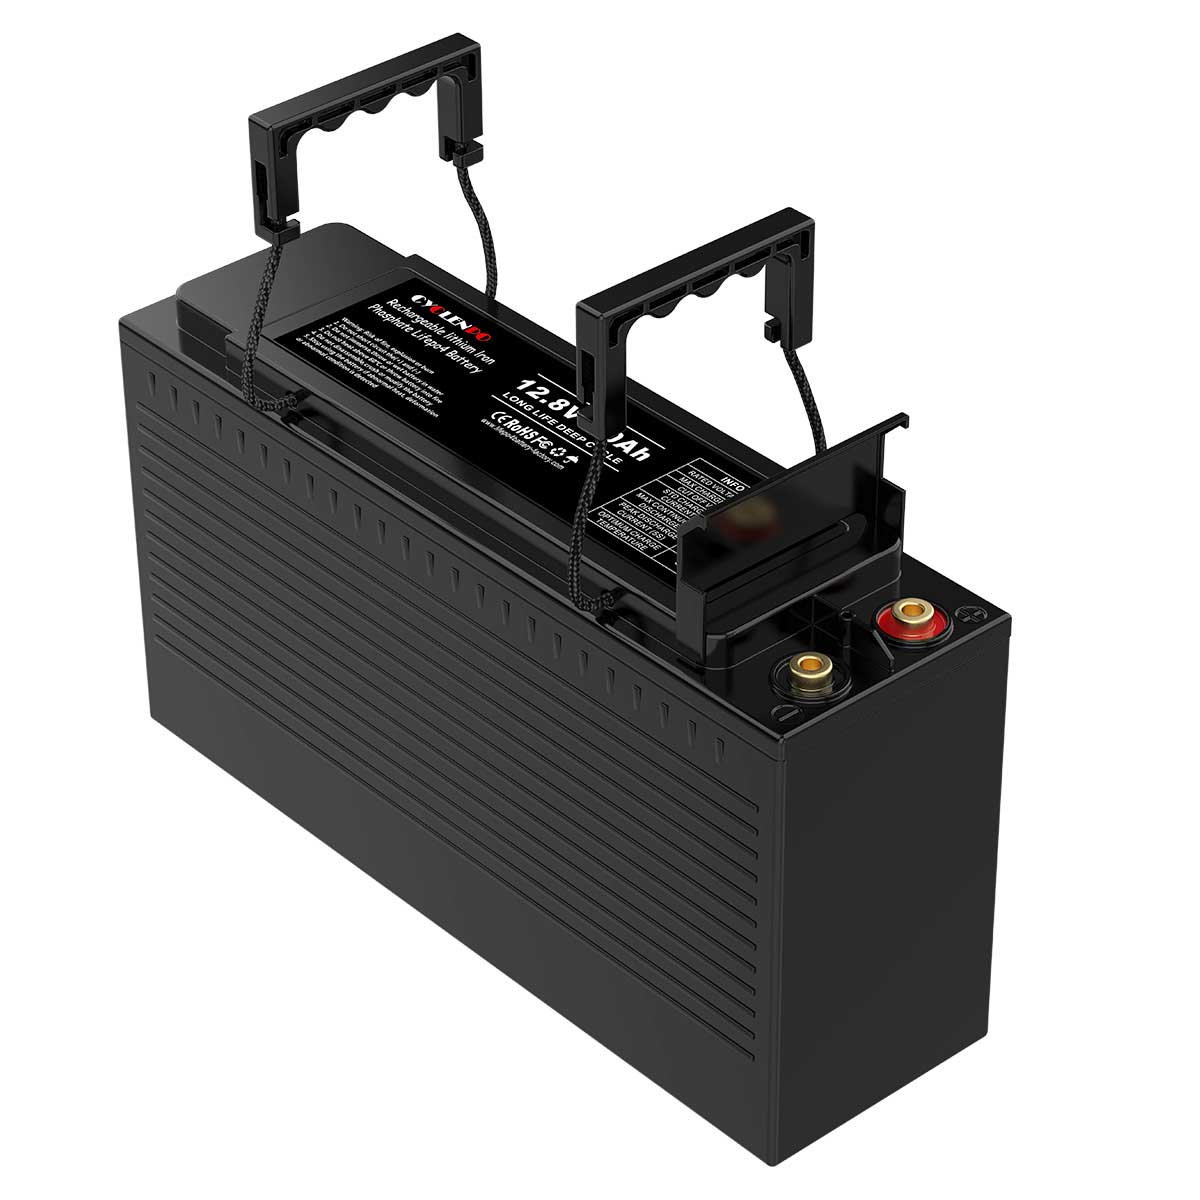 Batterie LiFePO4 12V 100Ah à décharge profonde avec BMS